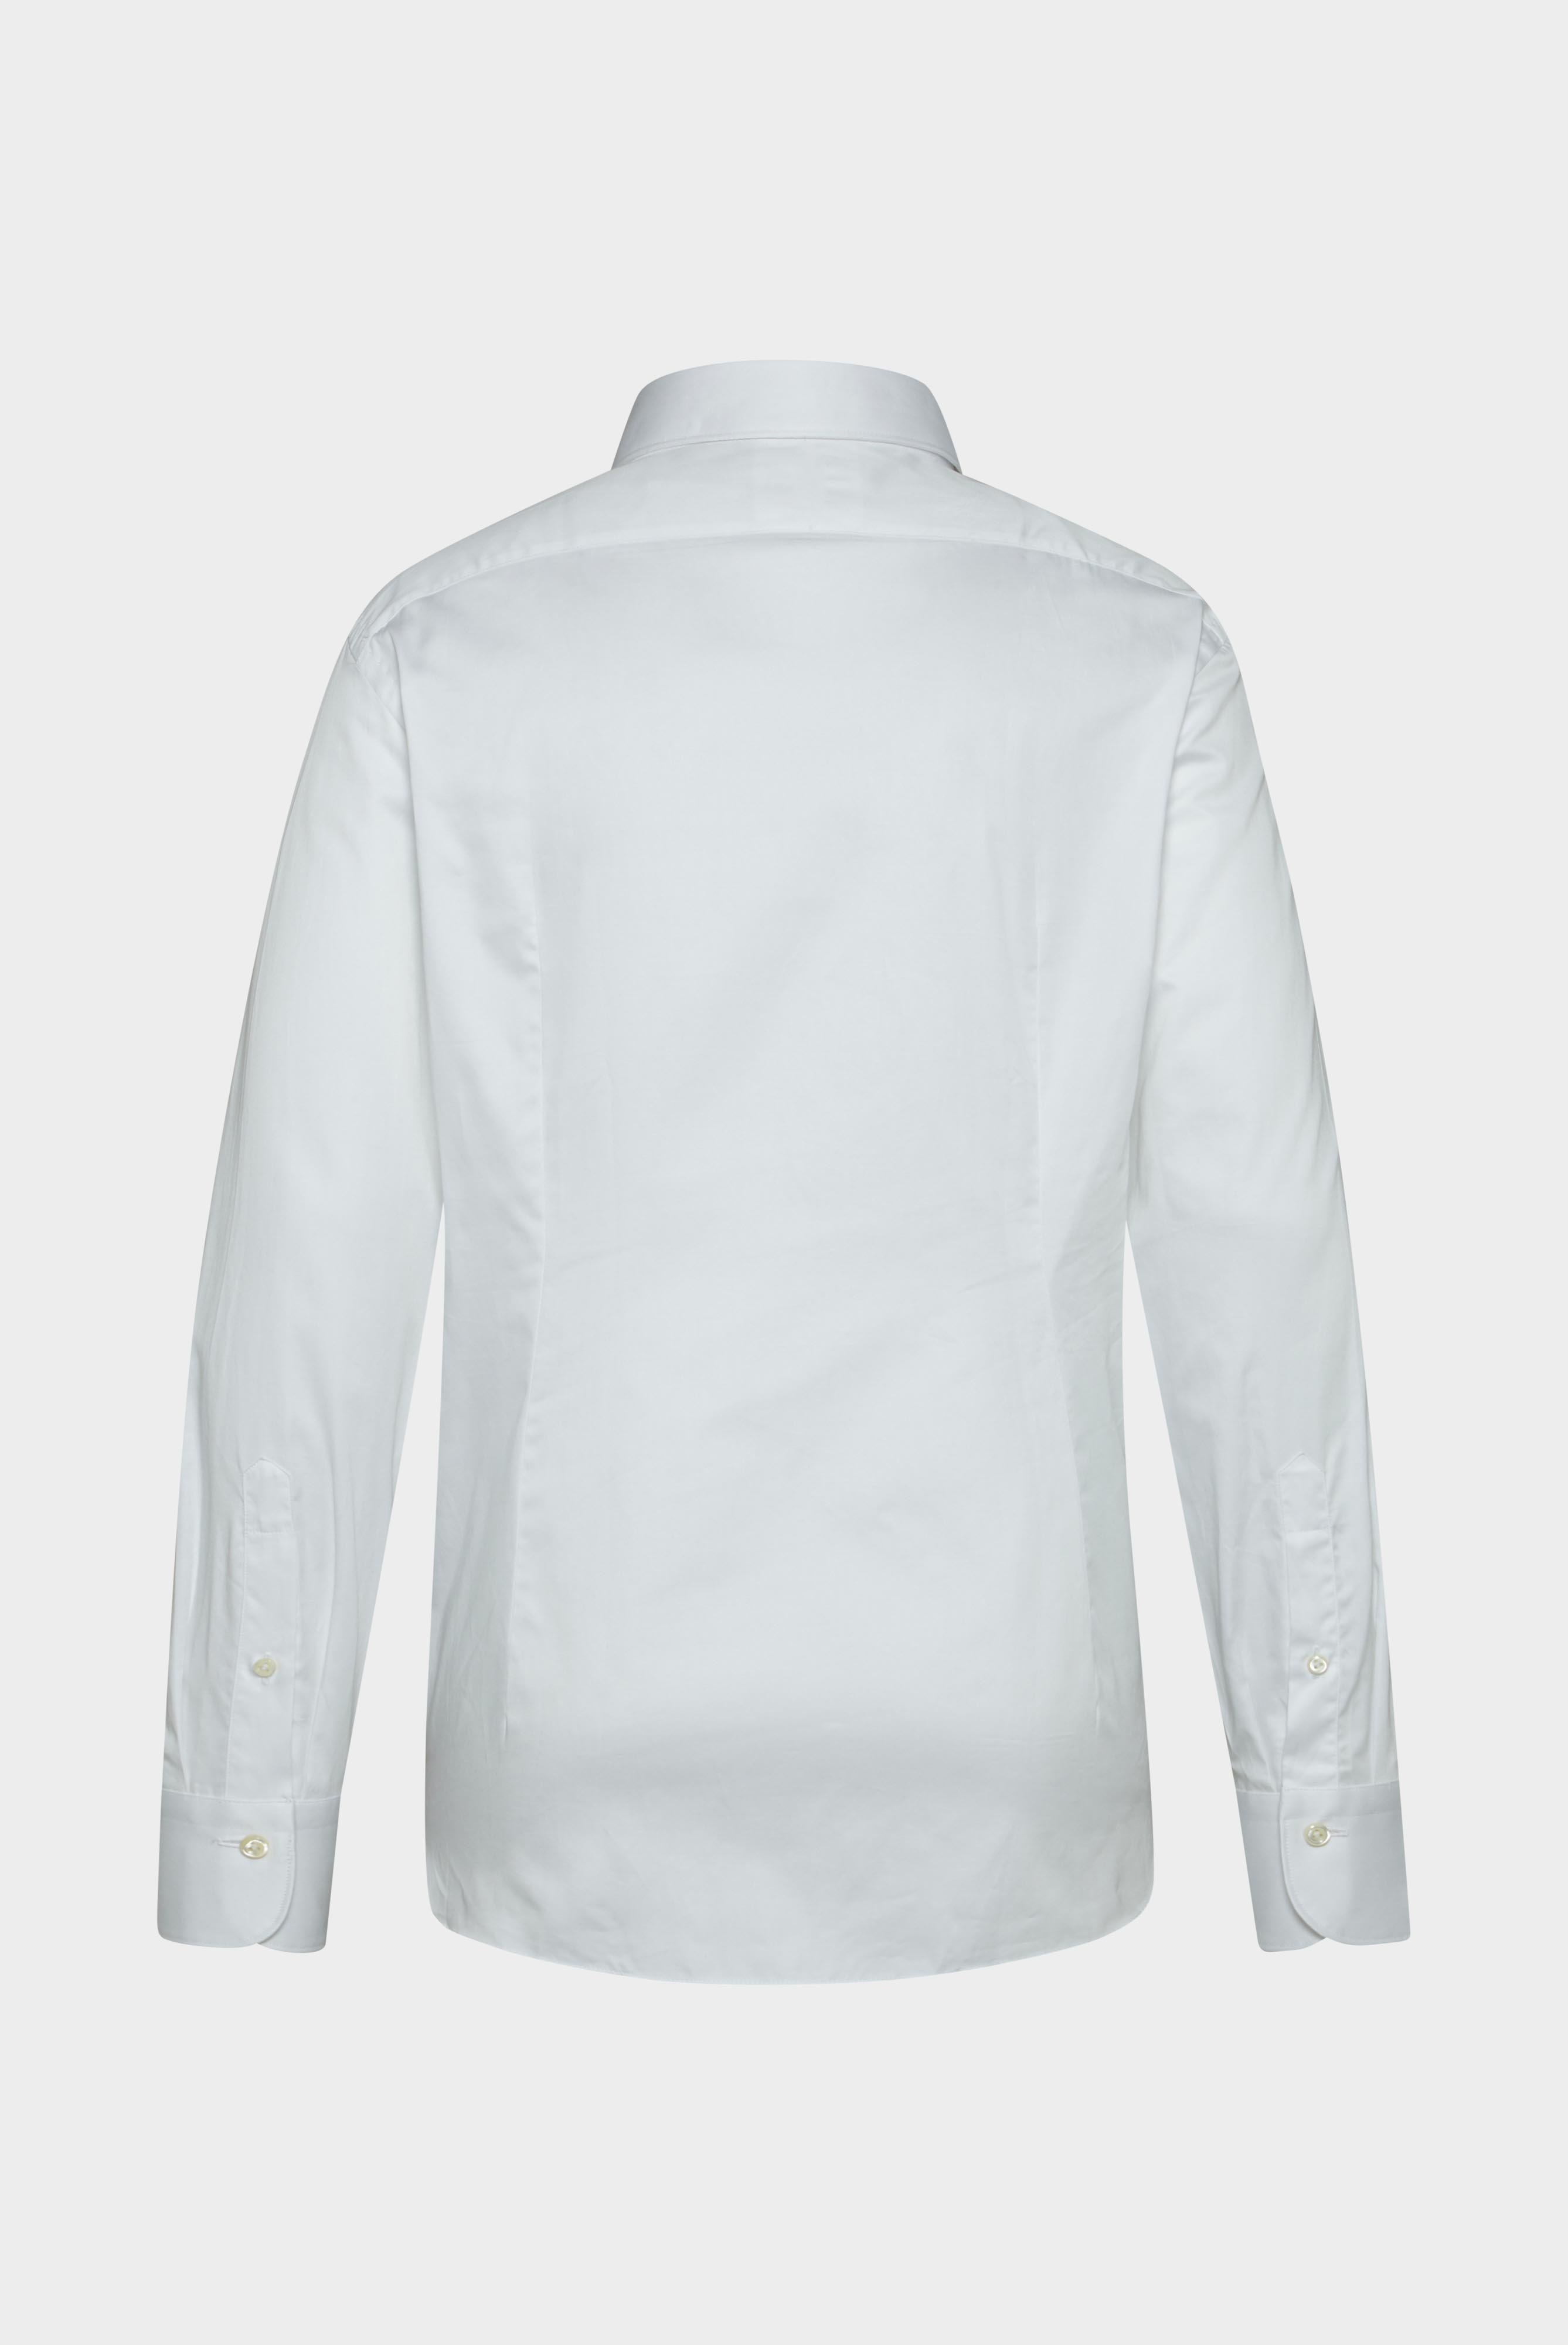 Meisterwerk Shirts+Structured Cotton Shirt+20.2502.NV.130972.000.37